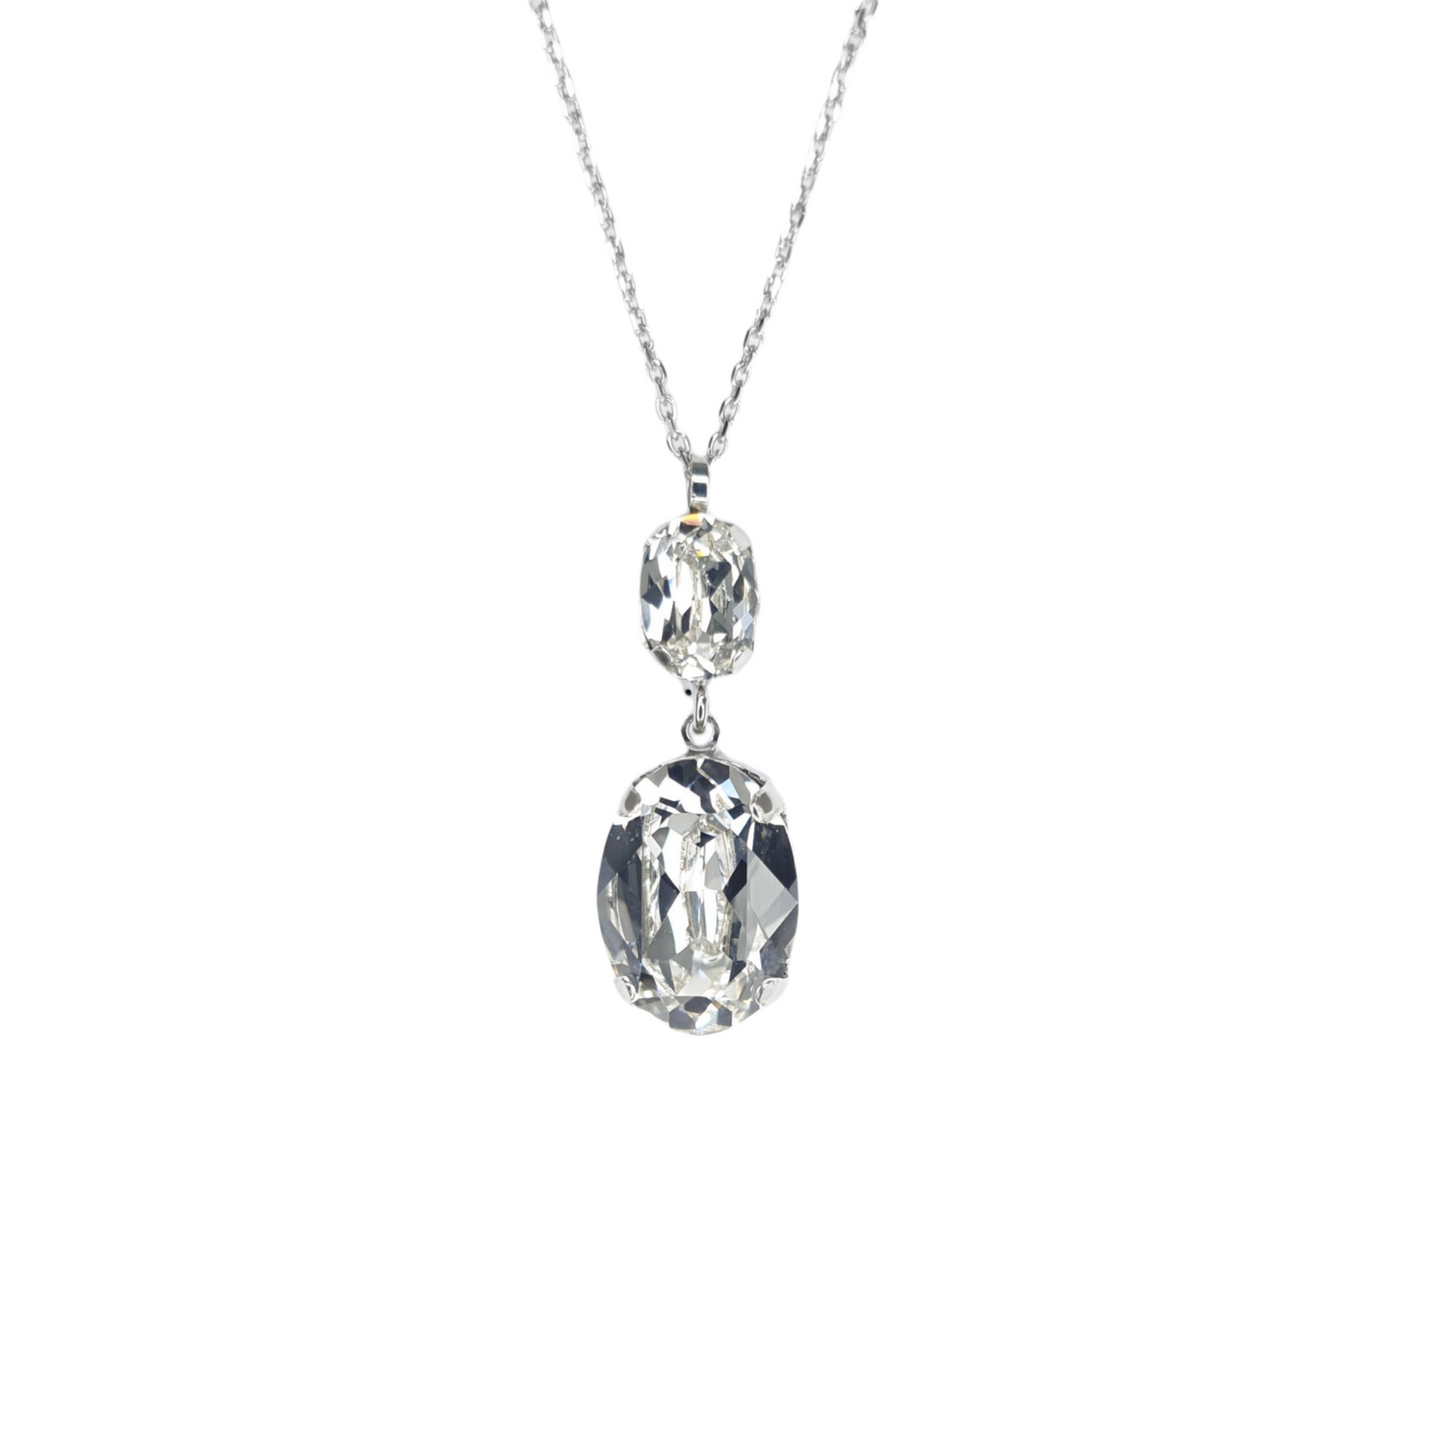 Silberkette mit  Swarovski Kristallen großer Stein Damenschmuck  Goldkette Collier Schmuck Yuwelamour Chain Halskette Elina